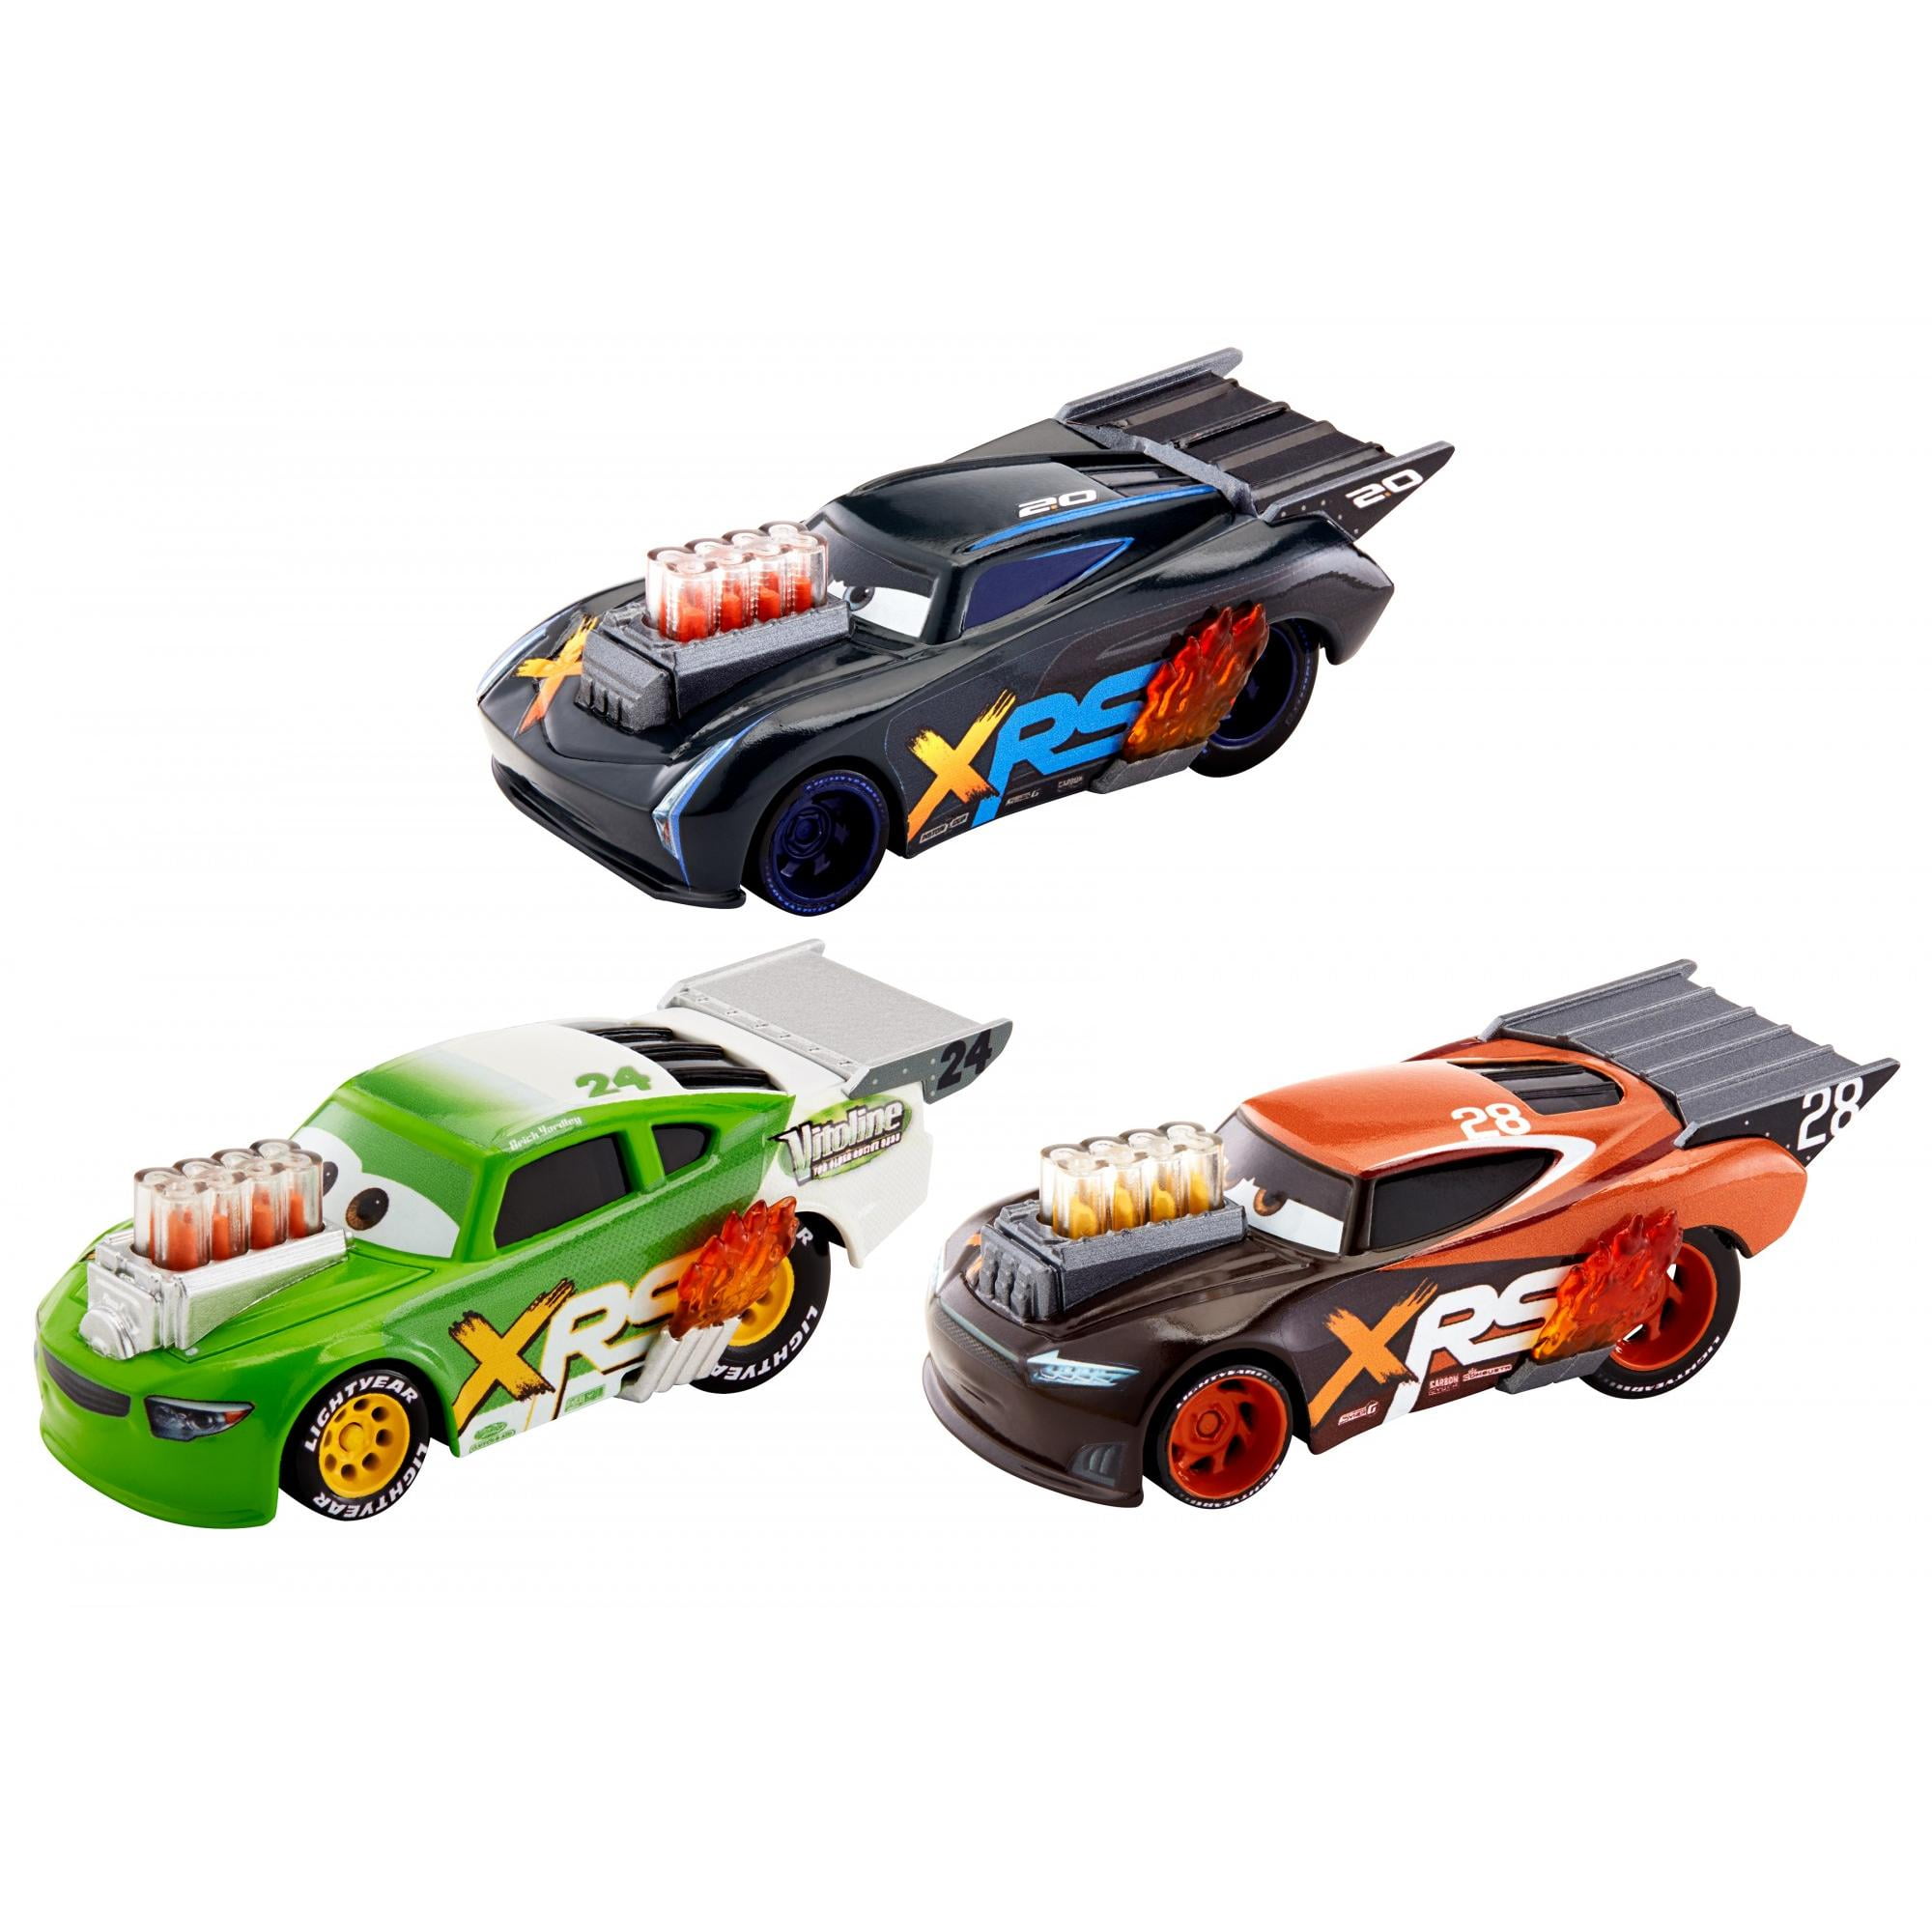 XRS Drag Racing 1:55 Scale Die-Cast Vehicle Choose from 6 Disney Pixar Cars 